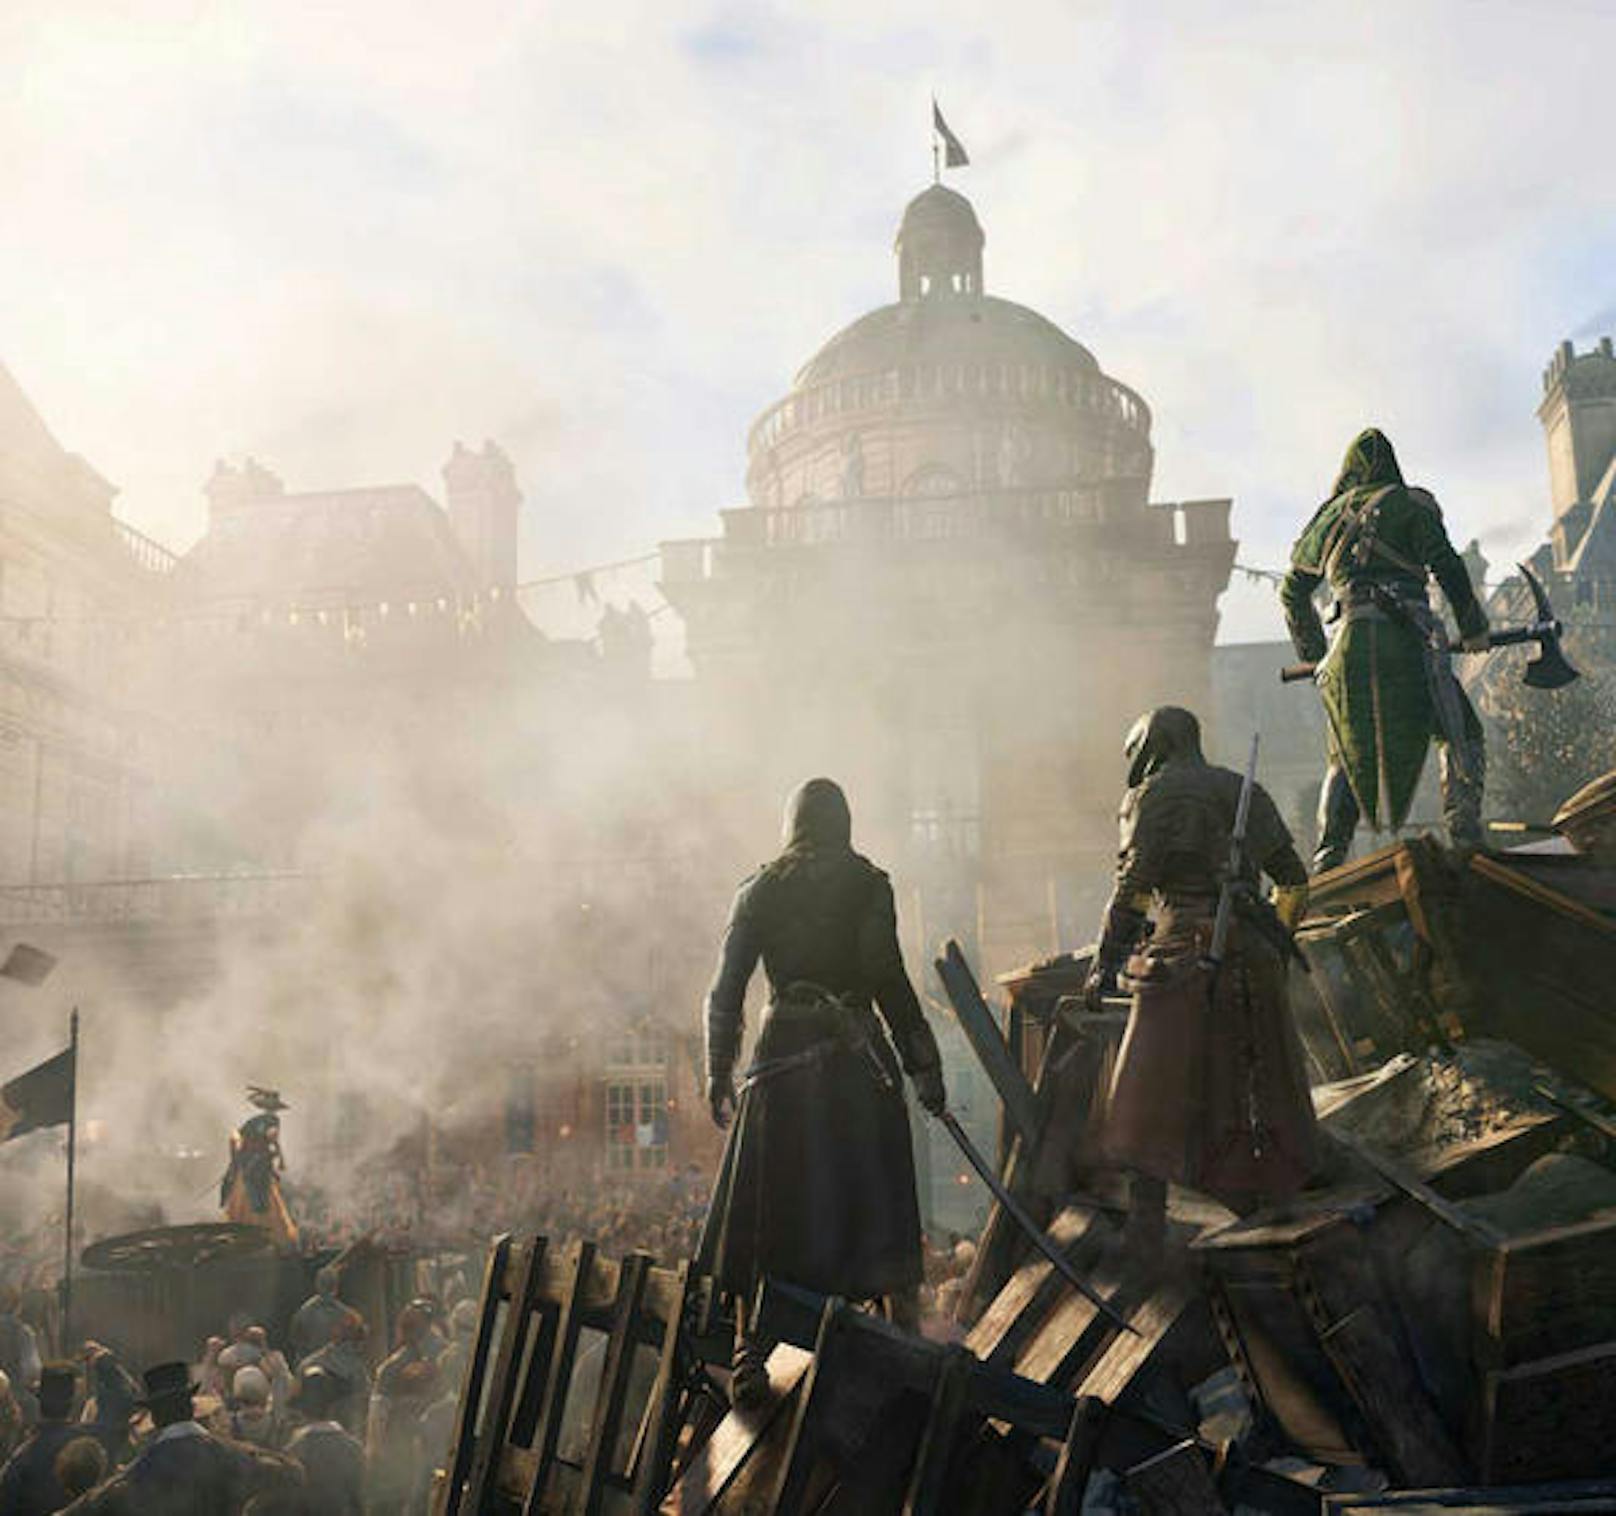 Assassin's Creed Unity präsentiert sich im Test als stärkerer Vertreter seiner Reihe. Beibehalten wurde die offene Spielewelt, die Third-Person-Perspektive - gefeilt wurde aber an den Punkten, die Kritiker an Assassin's Creed IV: Black Flag bemängelten.